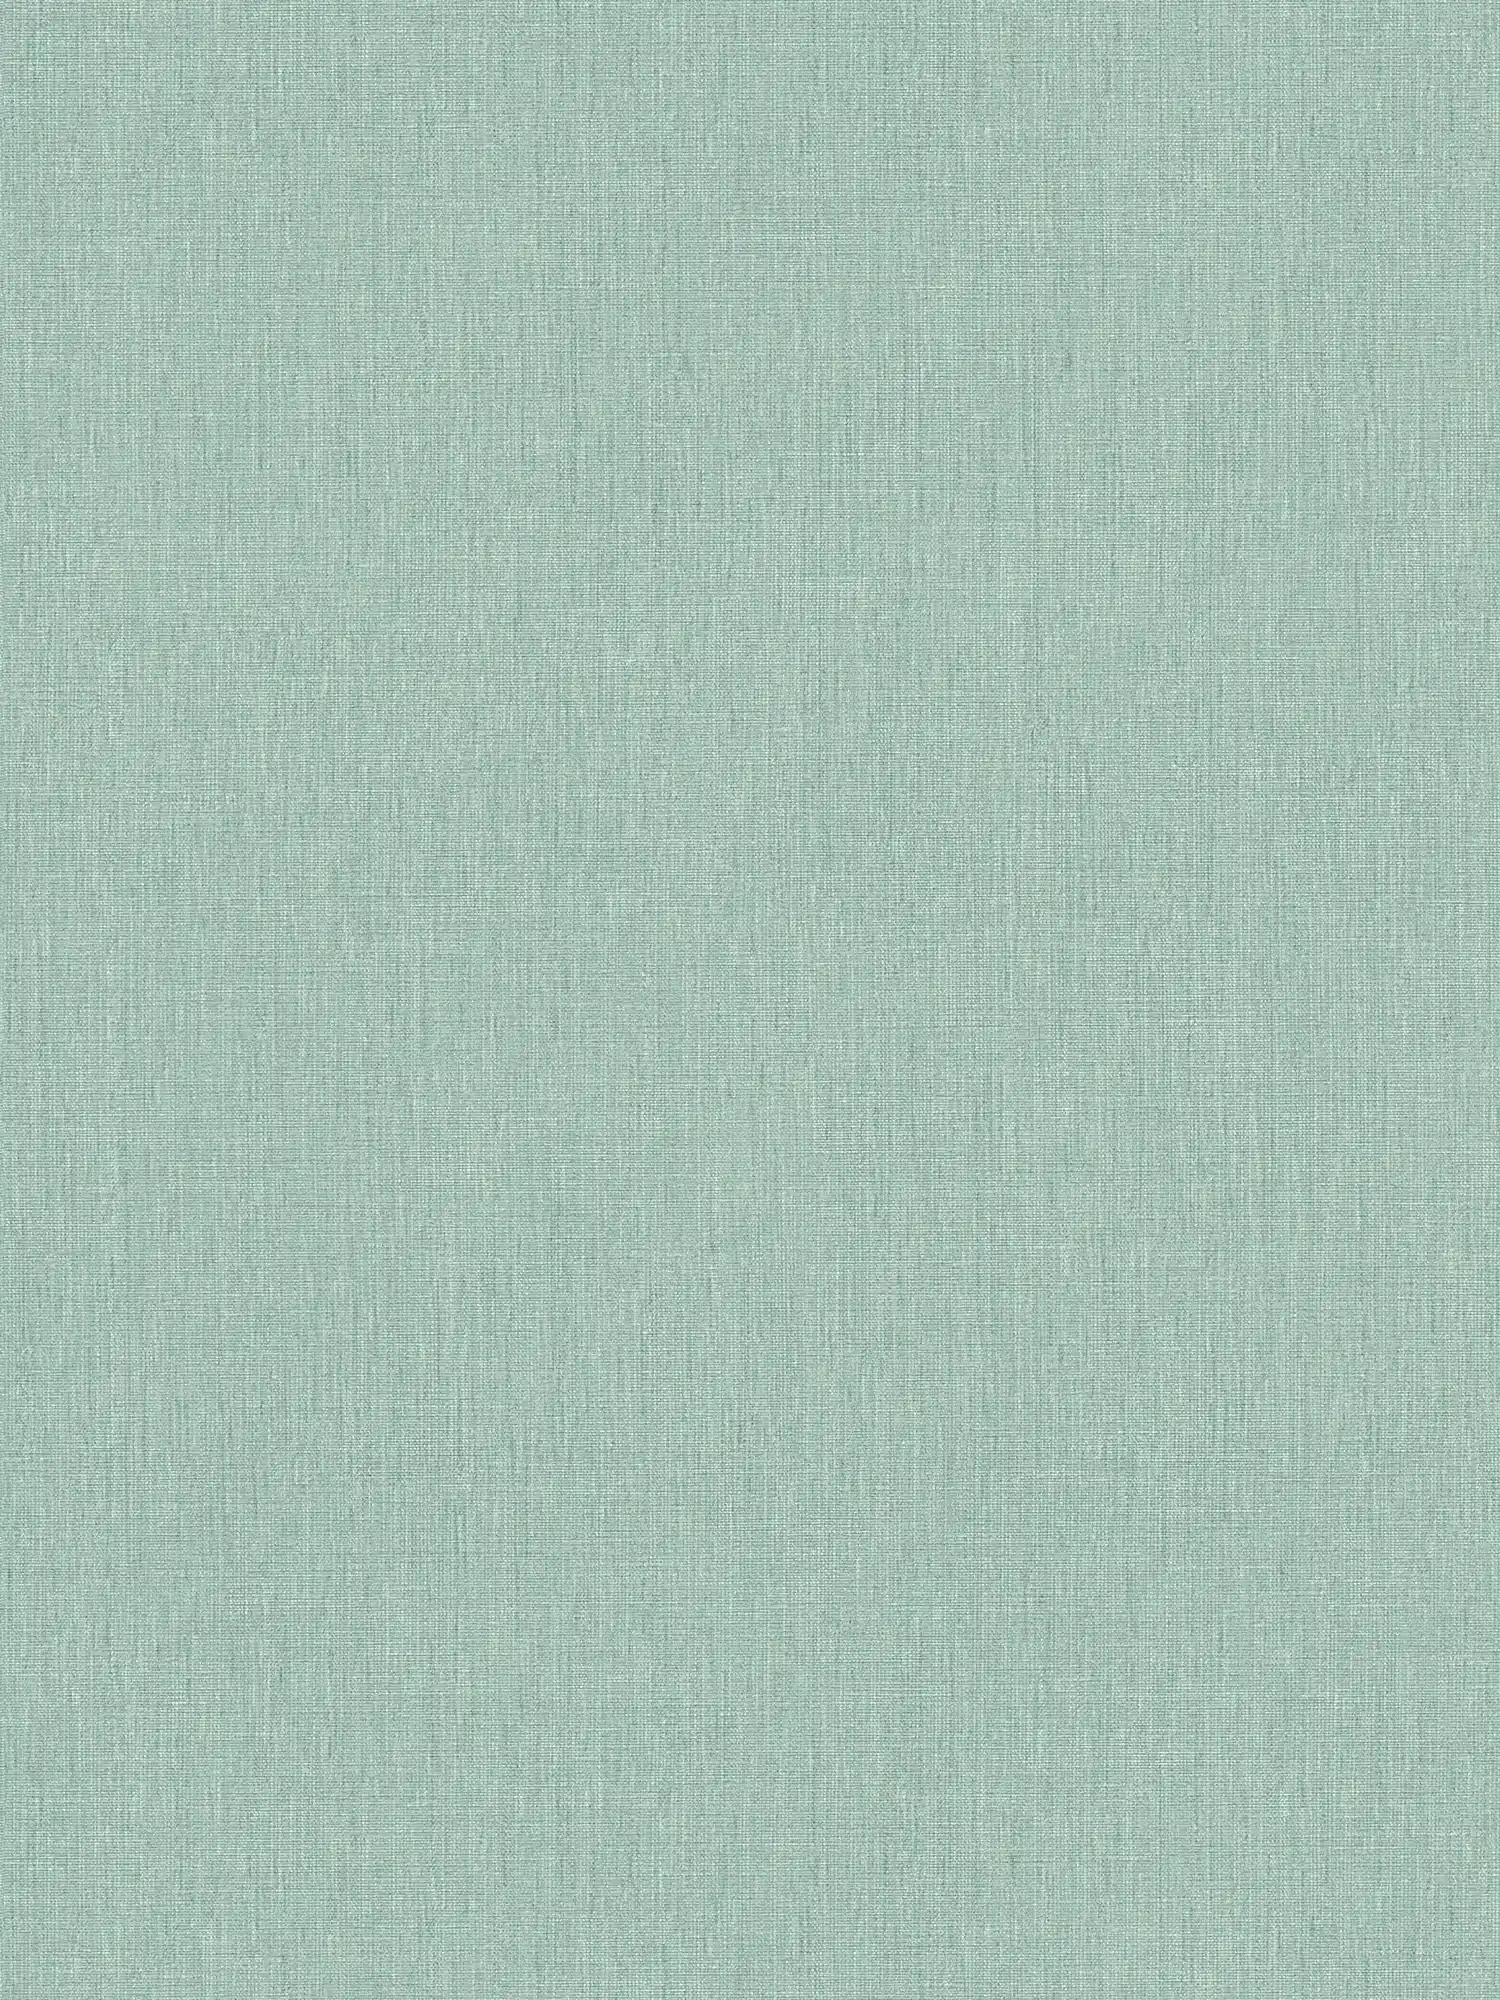 Papel pintado unitario de aspecto textil - verde, turquesa, azul
